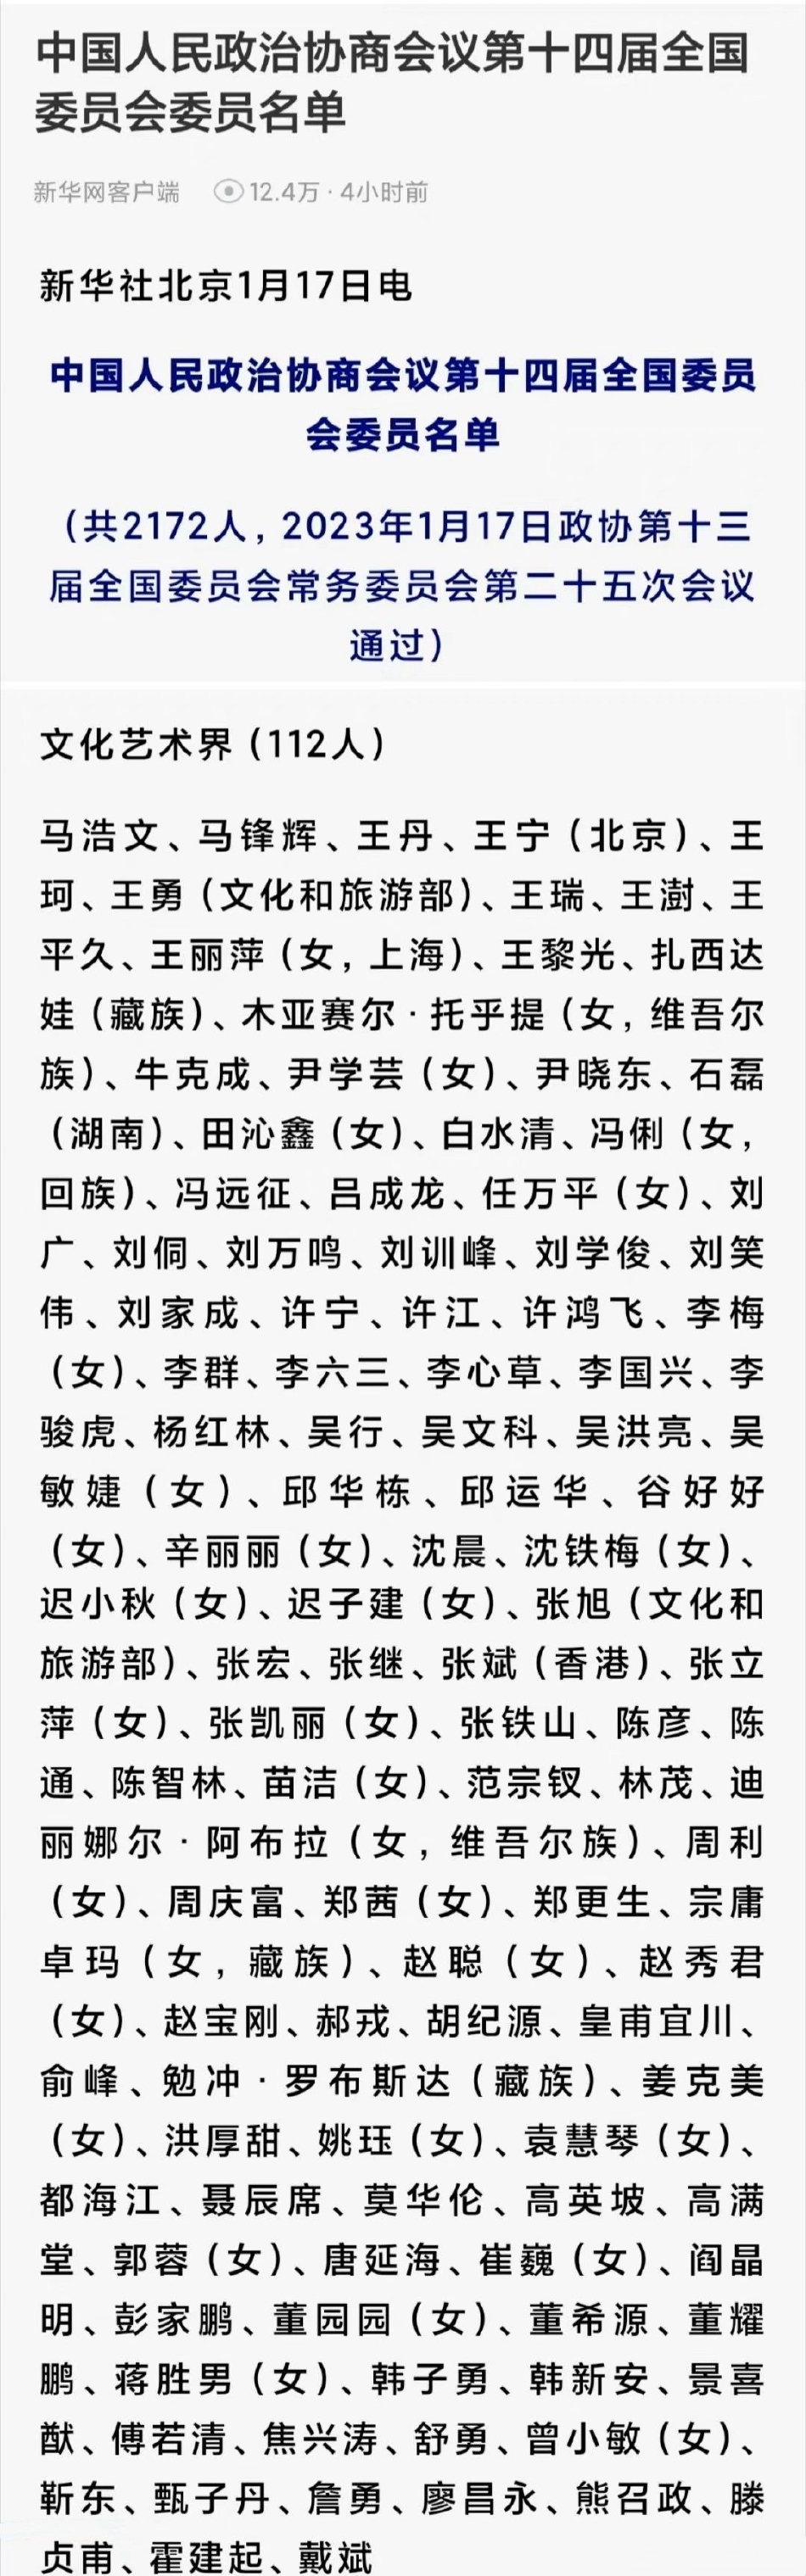 新一届全国政协委员名单公布 靳东甄子丹当选解锁新身份